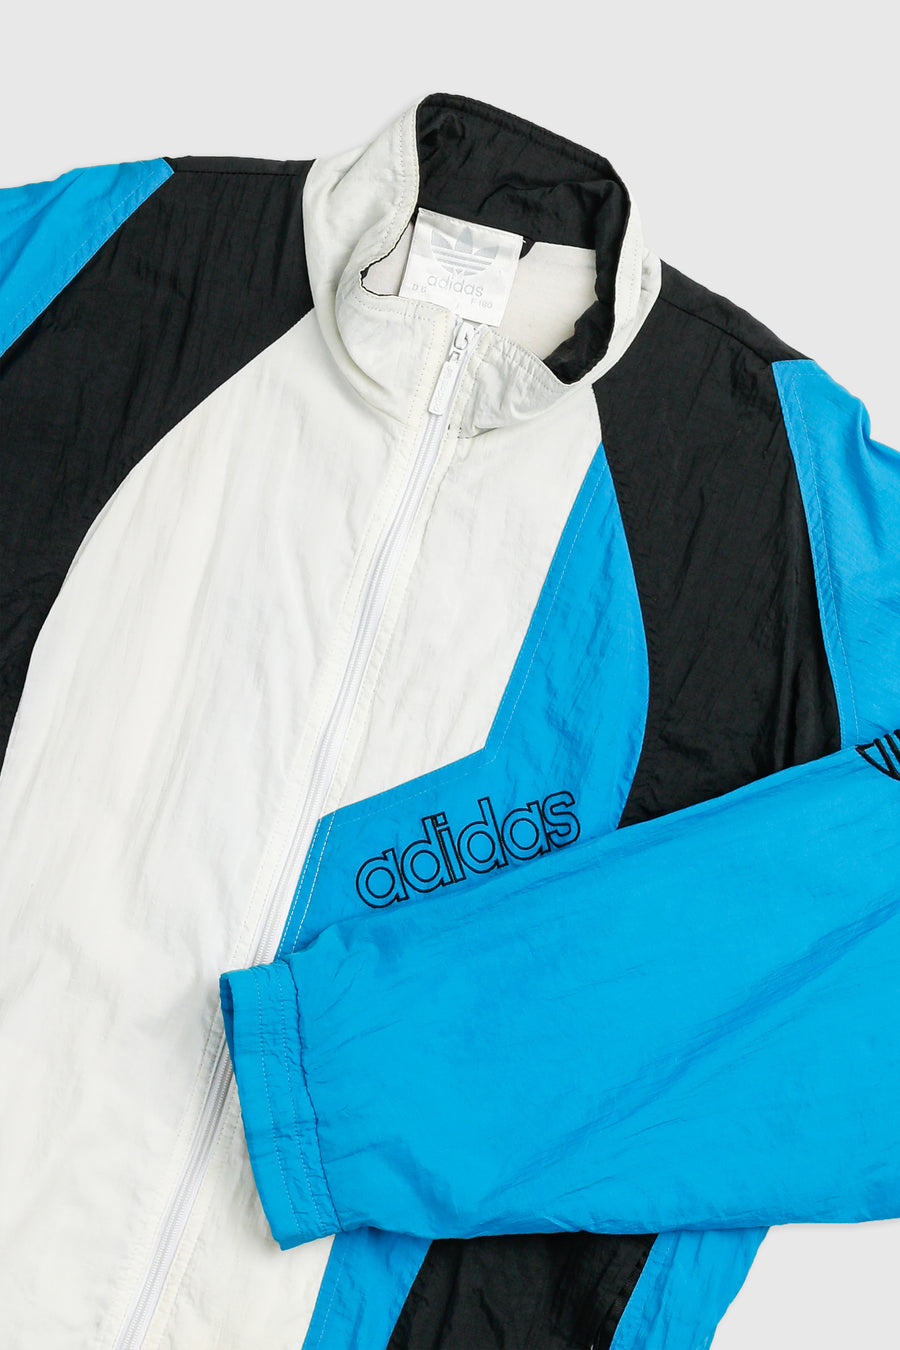 Vintage Adidas Windbreaker Jacket - M